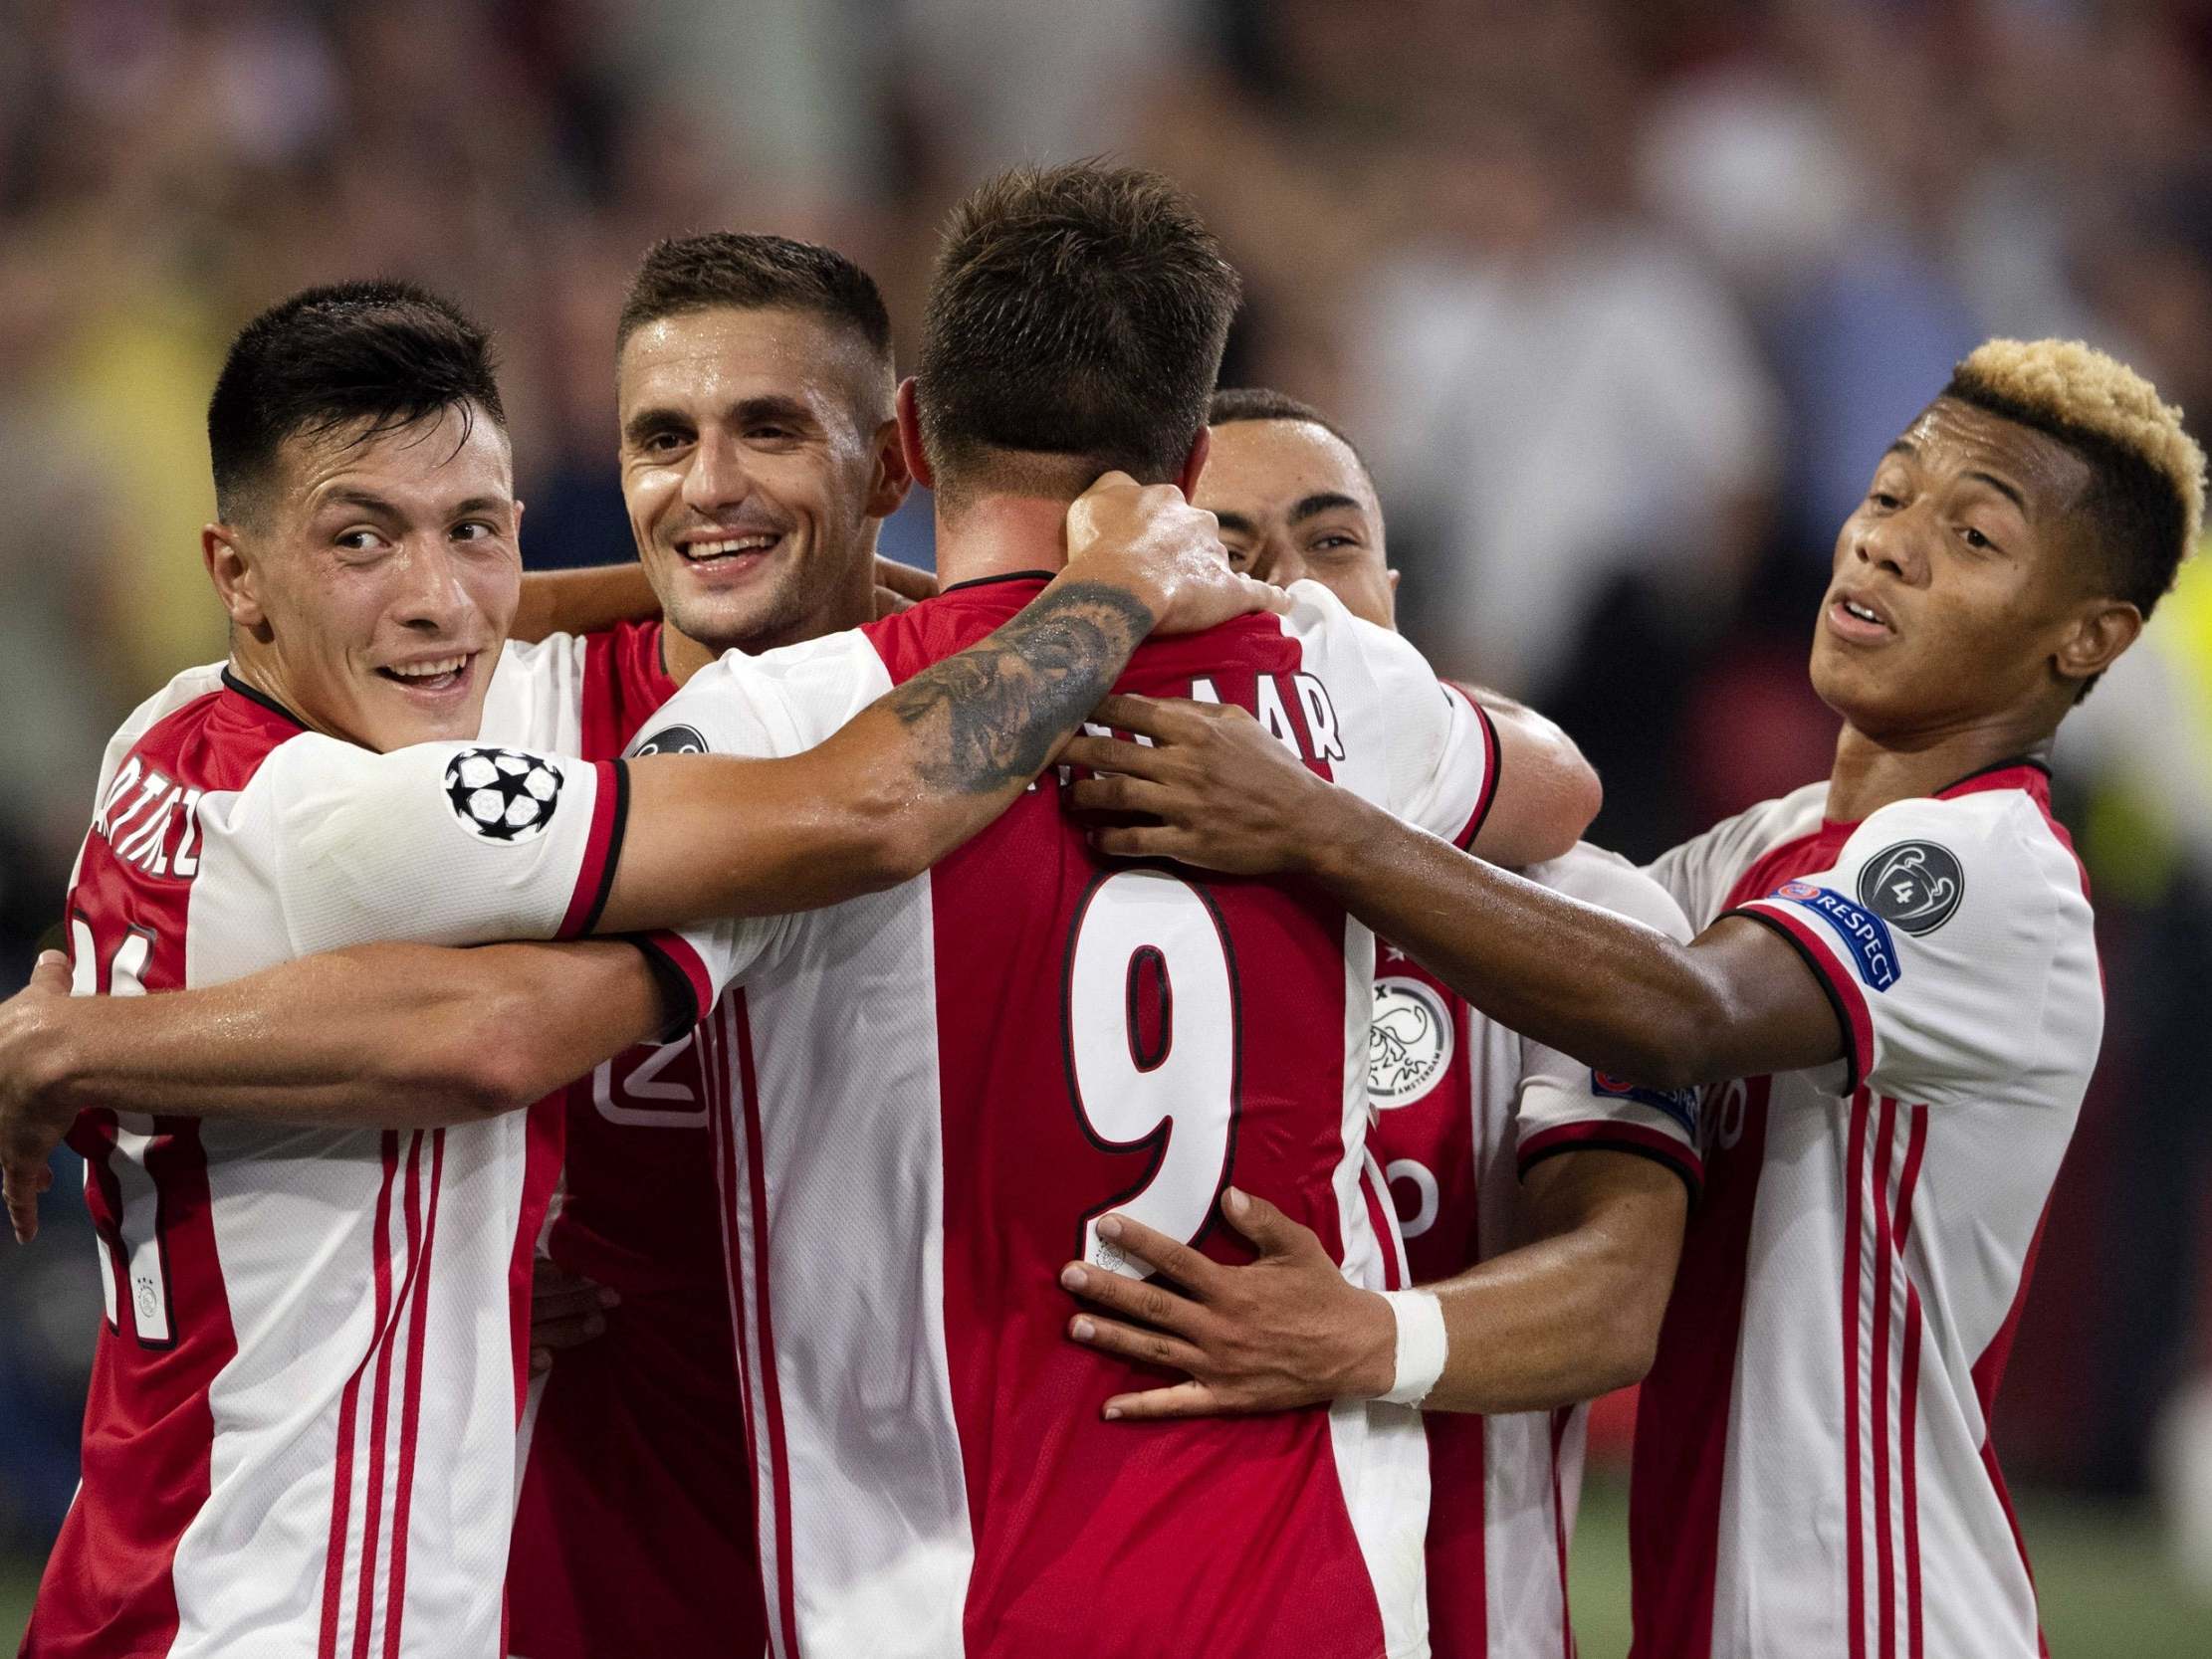 Ajax vs Lille OSC – Nhận định kèo bóng đá 00h55 26/02/2021 – Europa League